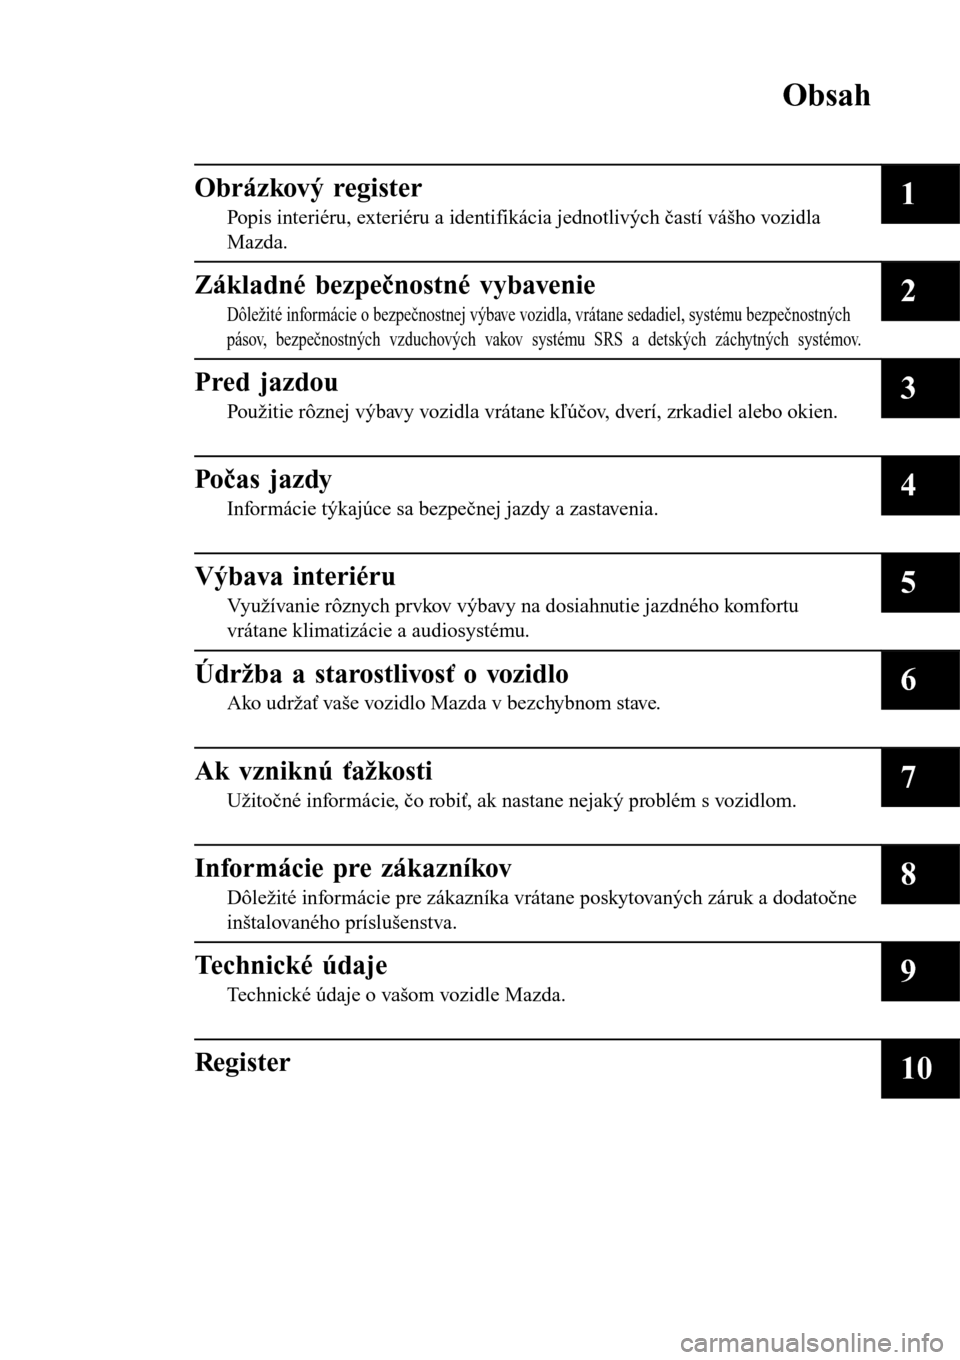 MAZDA MODEL 3 HATCHBACK 2016  Užívateľská príručka (in Slovak) Obsah
Obrázkový register
Popis interiéru, exteriéru a identifikácia jednotlivých častí vášho vozidla
Mazda.1
Základné bezpečnostné vybavenie
Dôležité informácie o bezpečnostnej výb